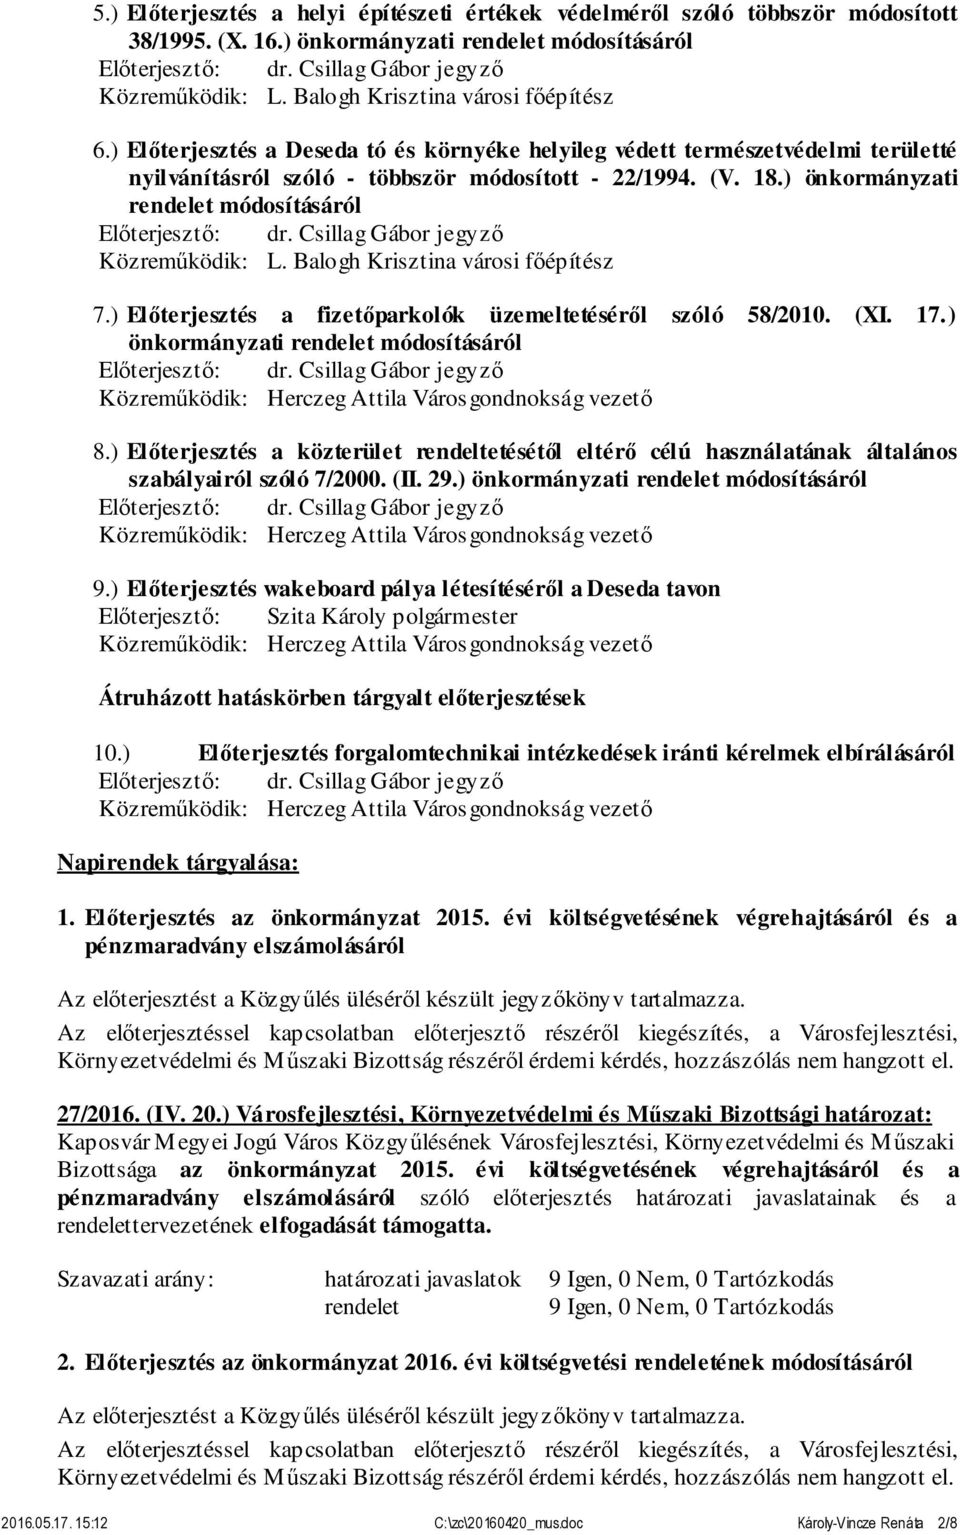 Balogh Krisztina városi főépítész 7.) Előterjesztés a fizetőparkolók üzemeltetéséről szóló 58/2010. (XI. 17.) önkormányzati rendelet módosításáról 8.